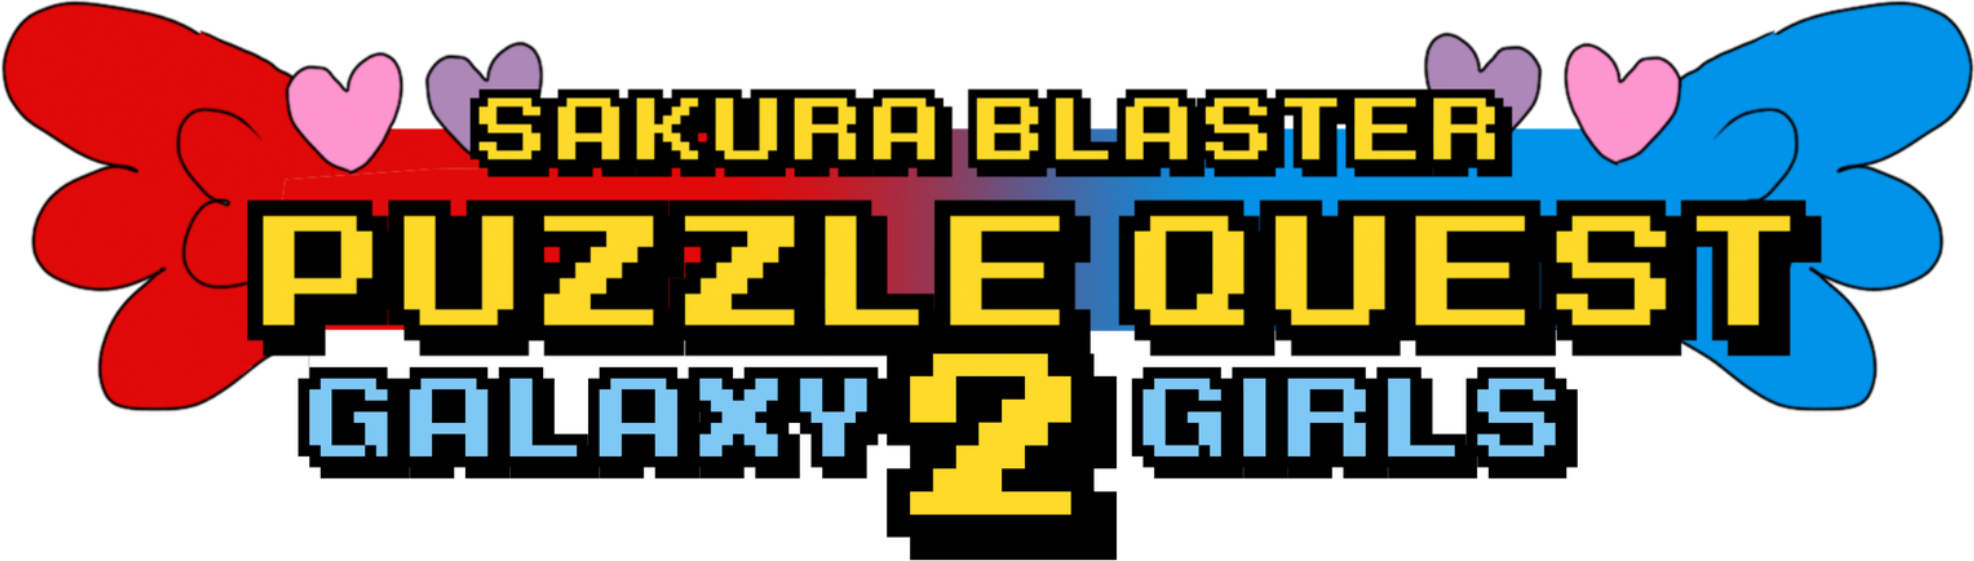 Sakura Blaster Puzzle Quest 2: Galaxy Girls